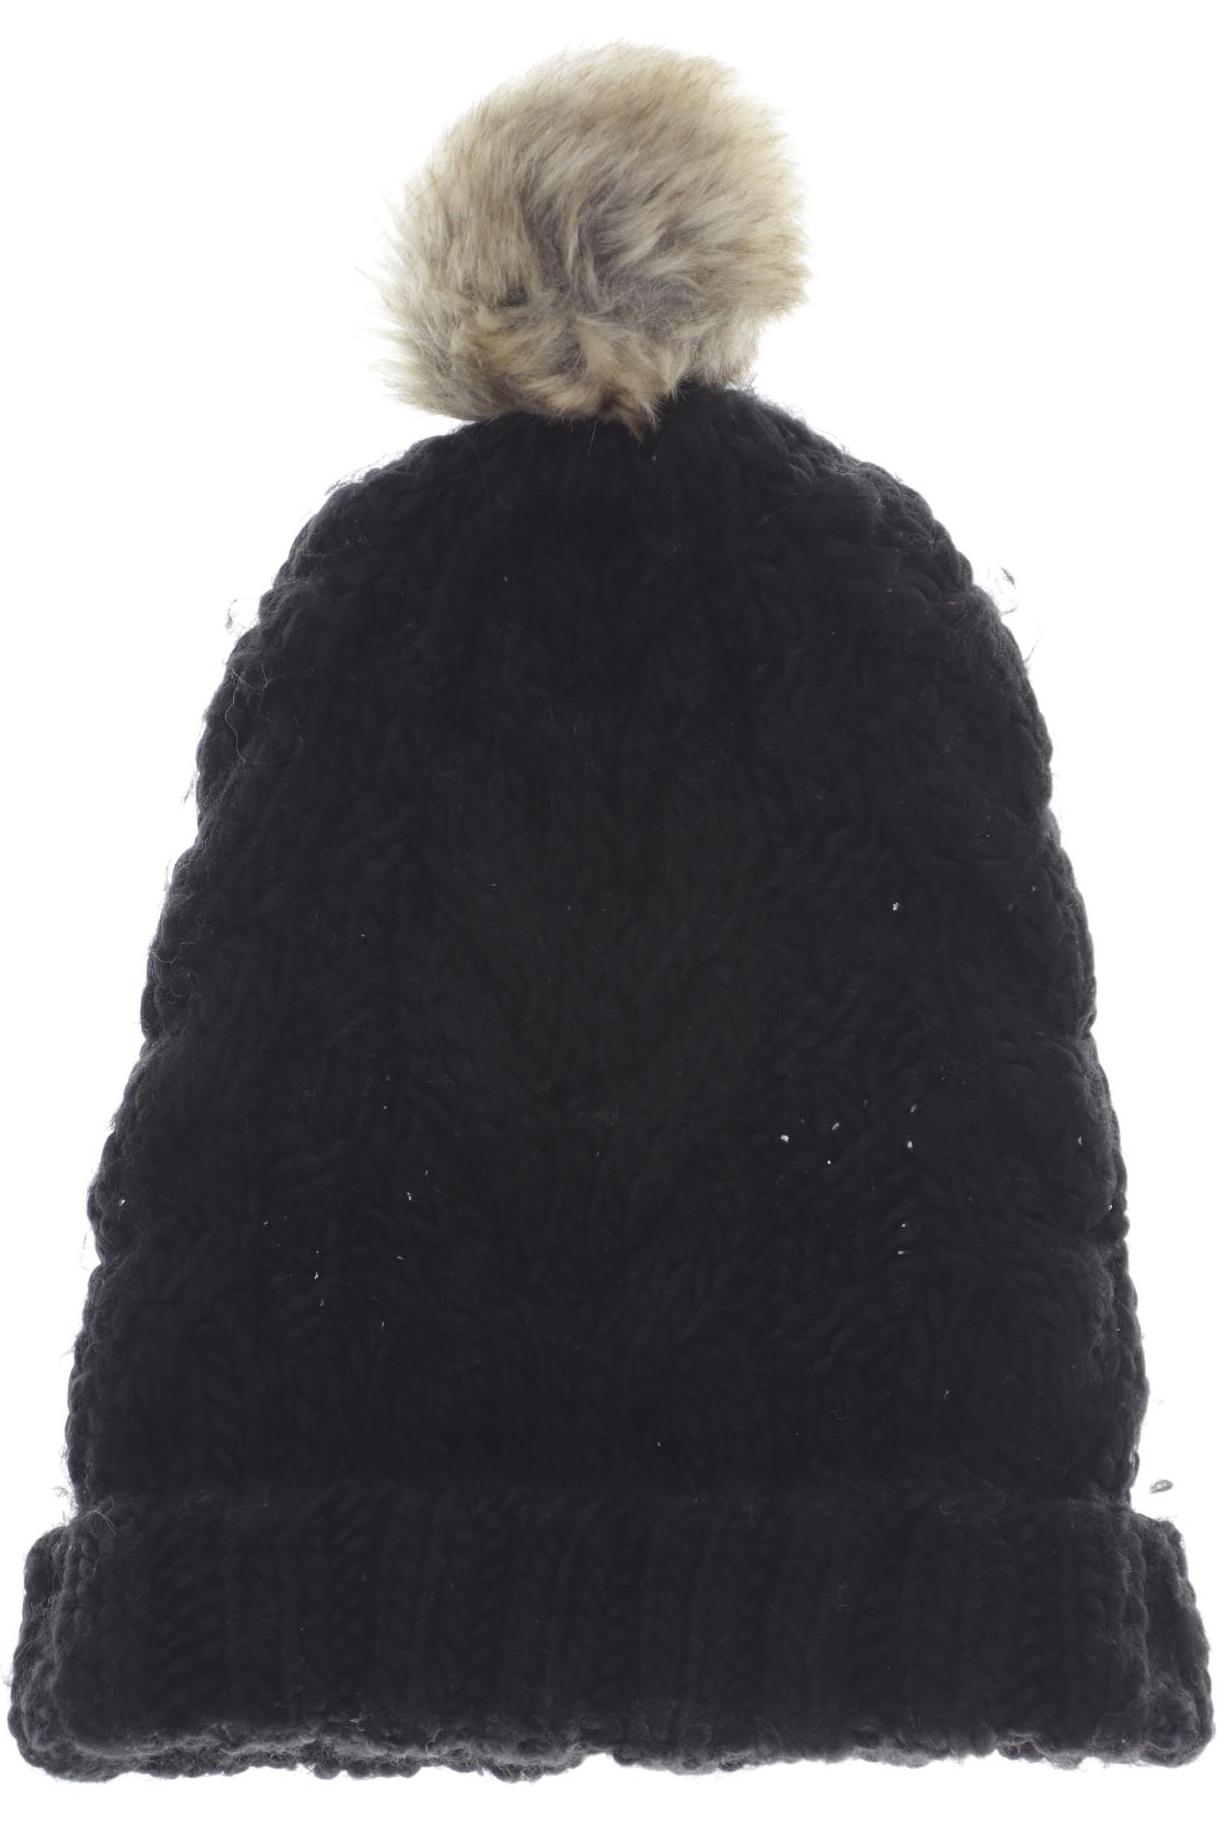 H&M Damen Hut/Mütze, schwarz, Gr. uni von H&M